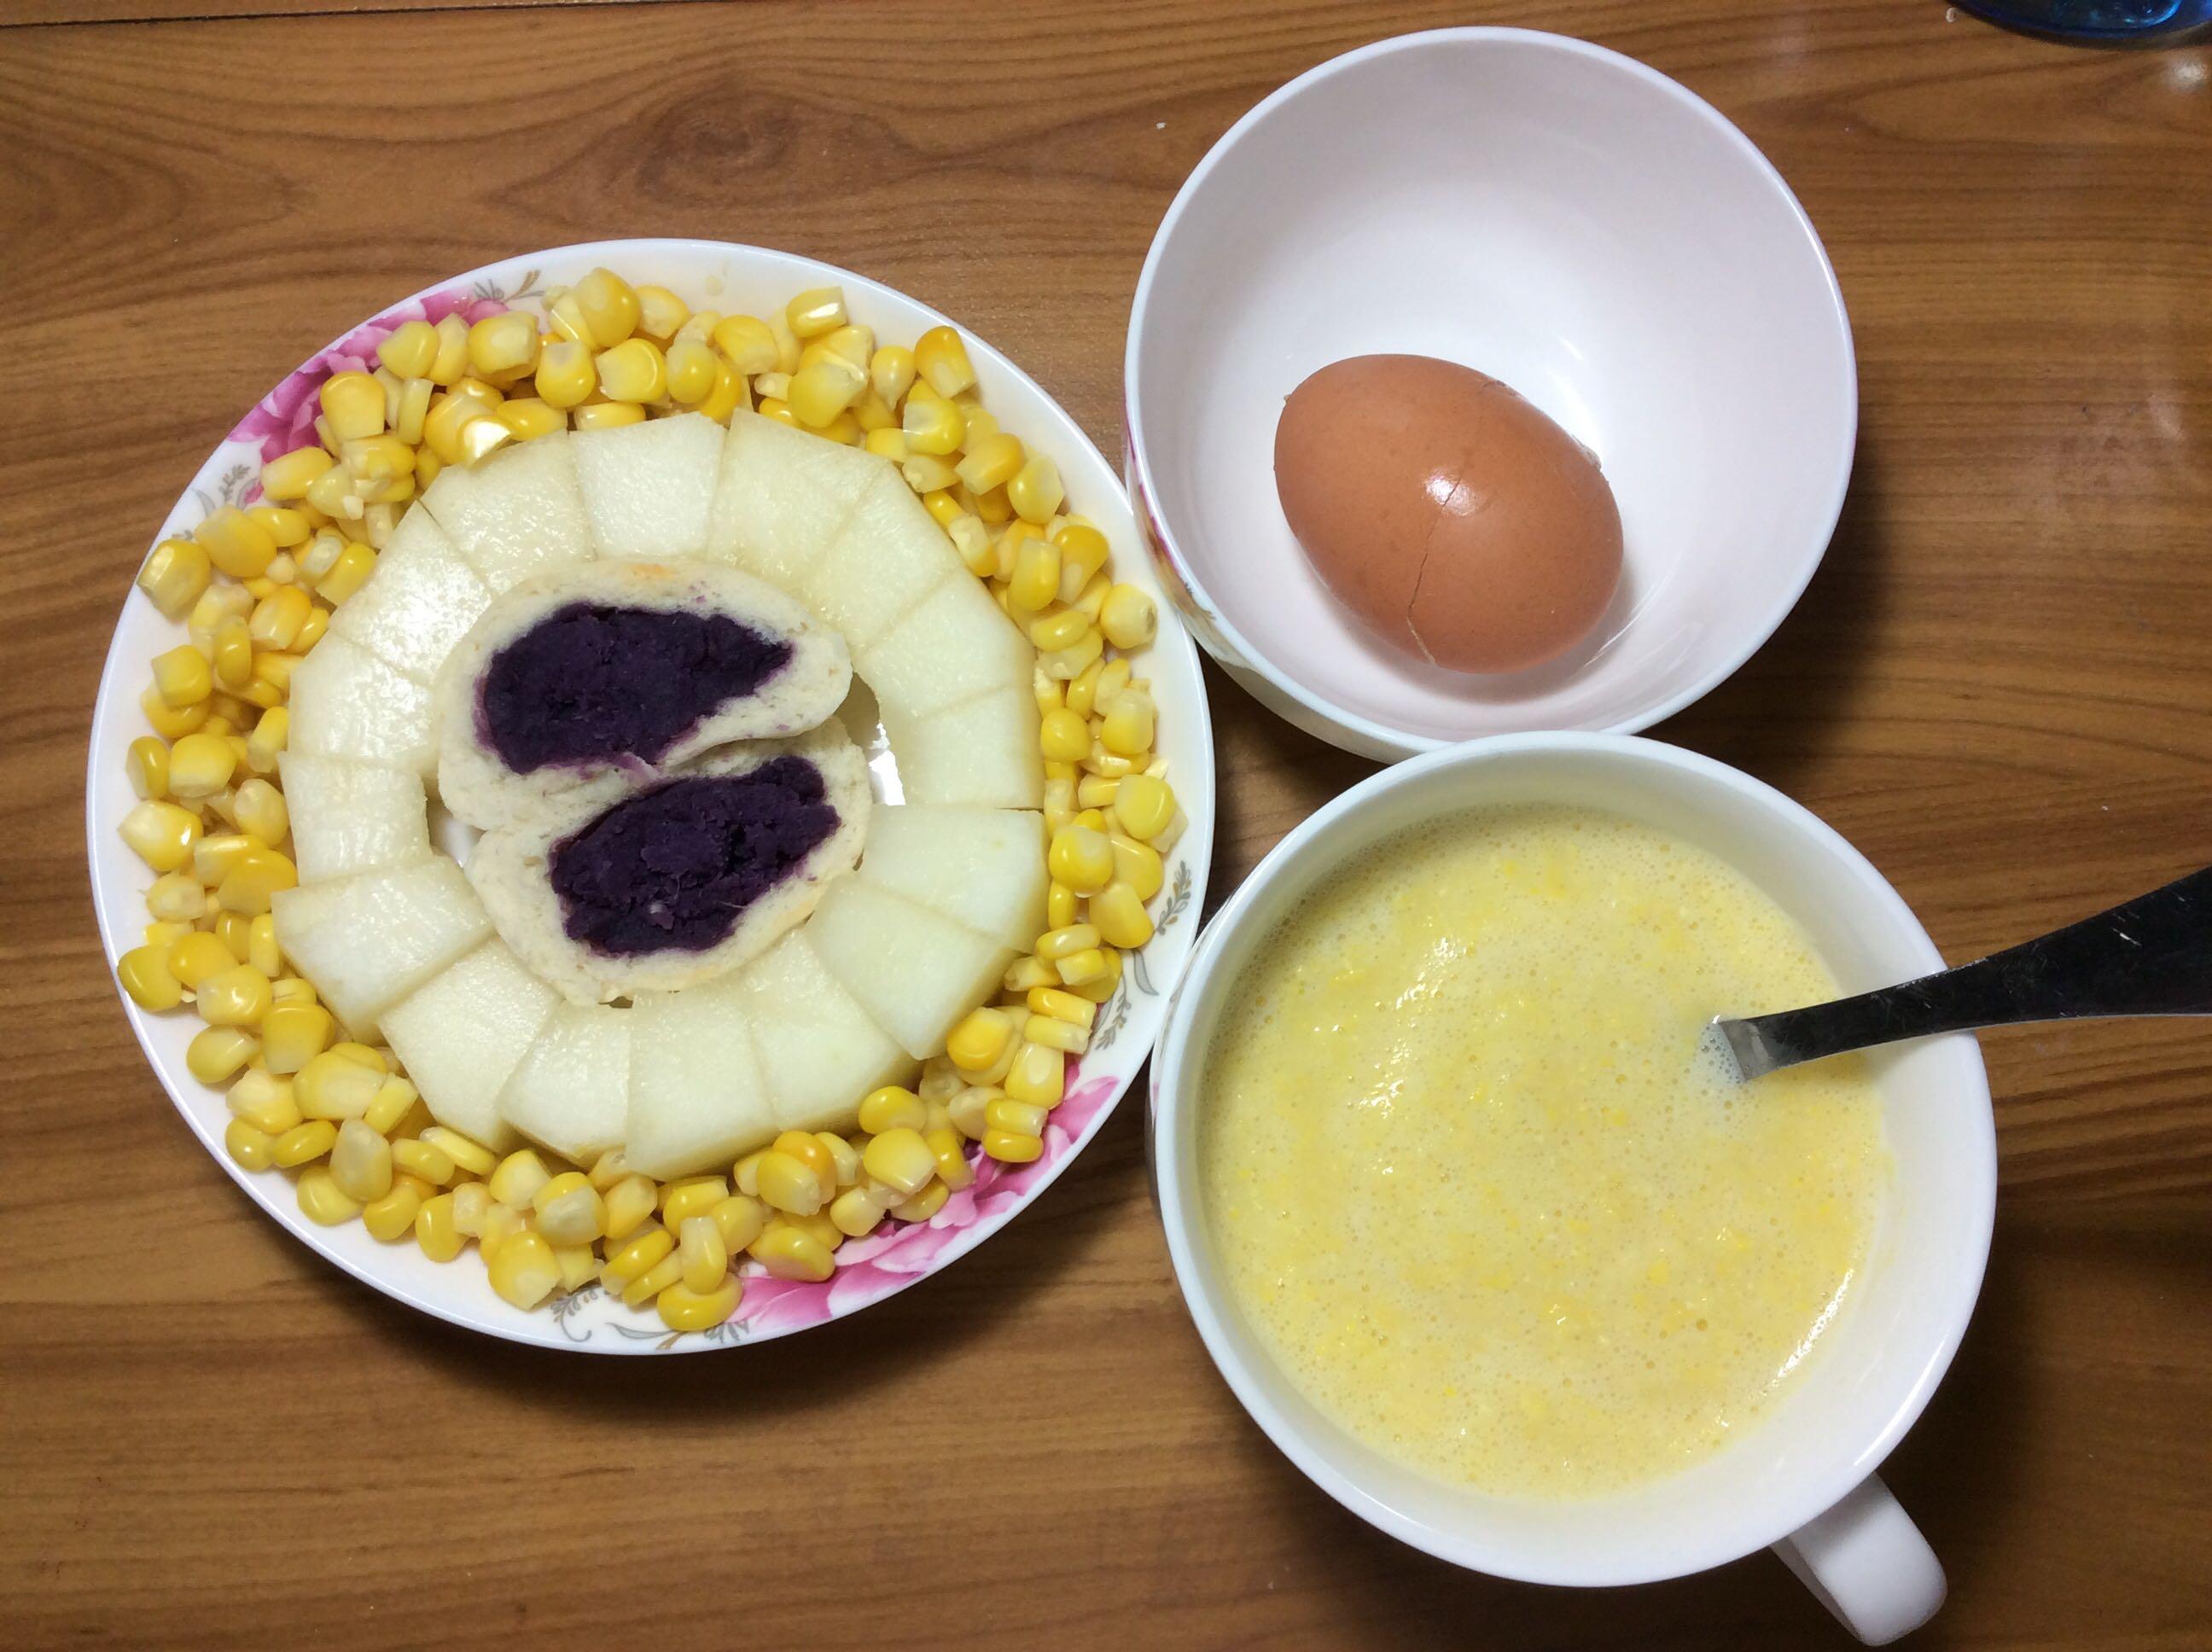 简单早餐——牛奶玉米煮燕麦_牛奶玉米煮燕麦_丽丽9的日志_美食天下